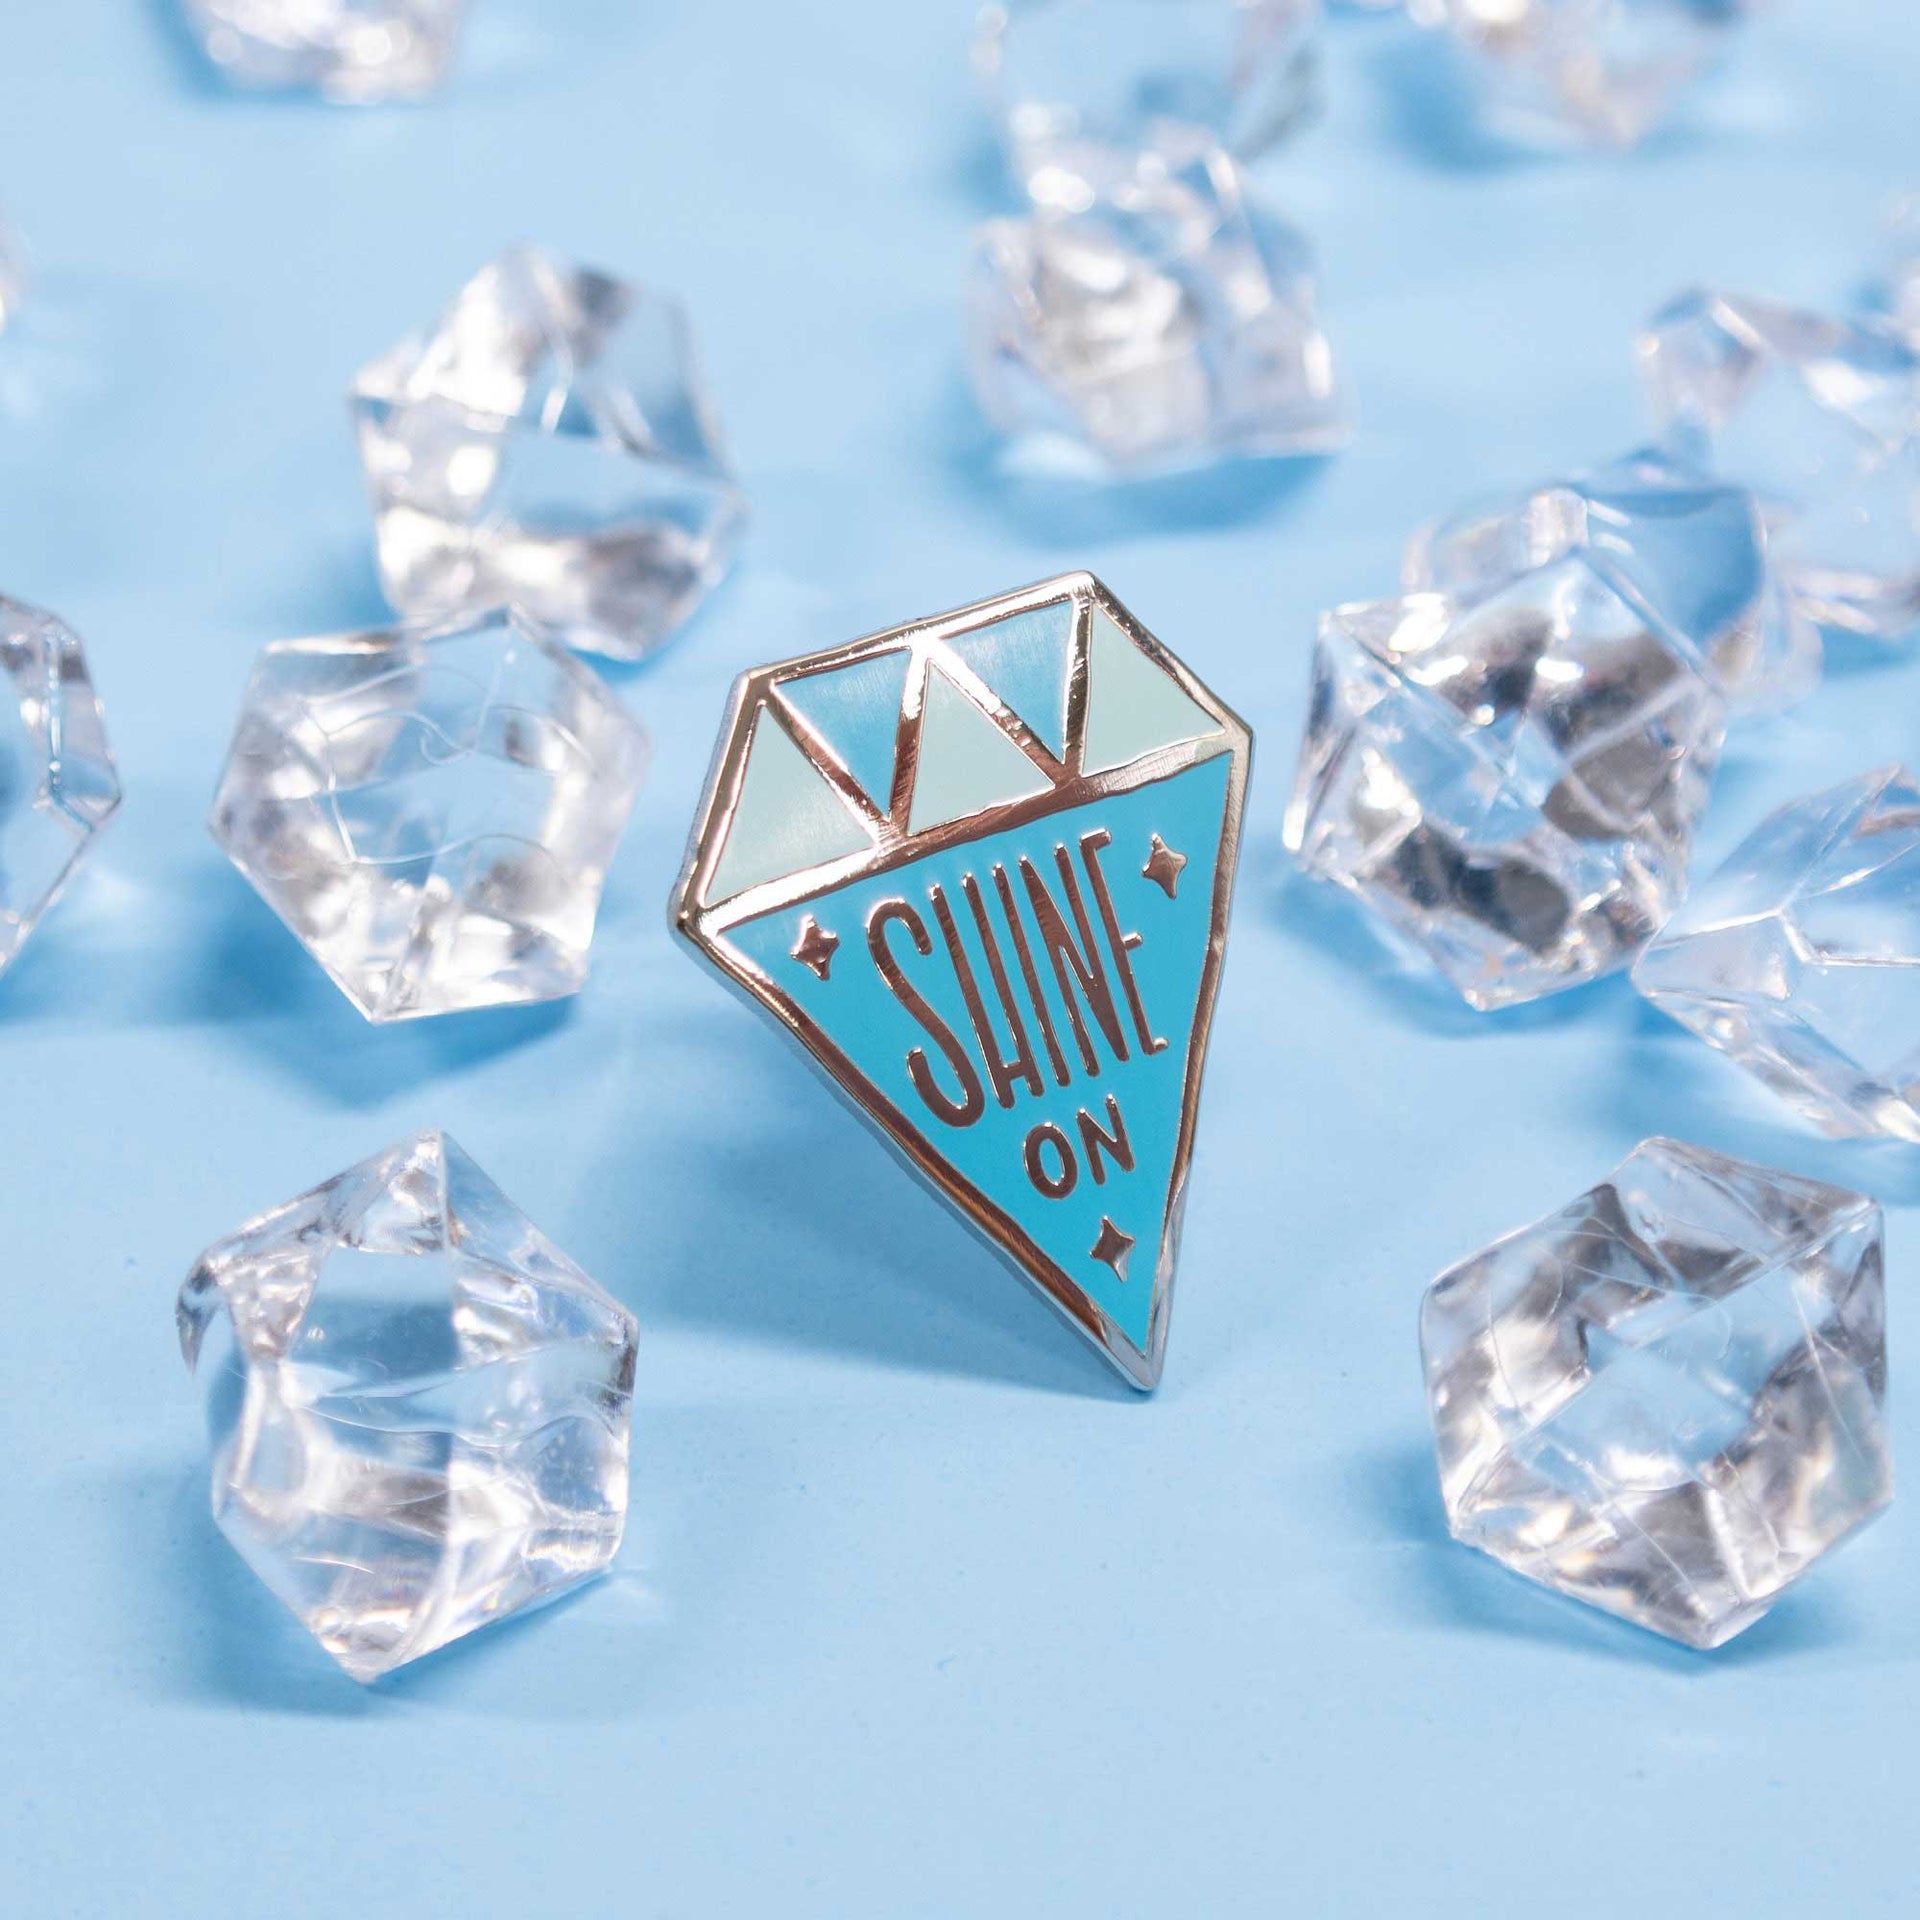 diamond shaped enamel pin that says "shine on" on blue background